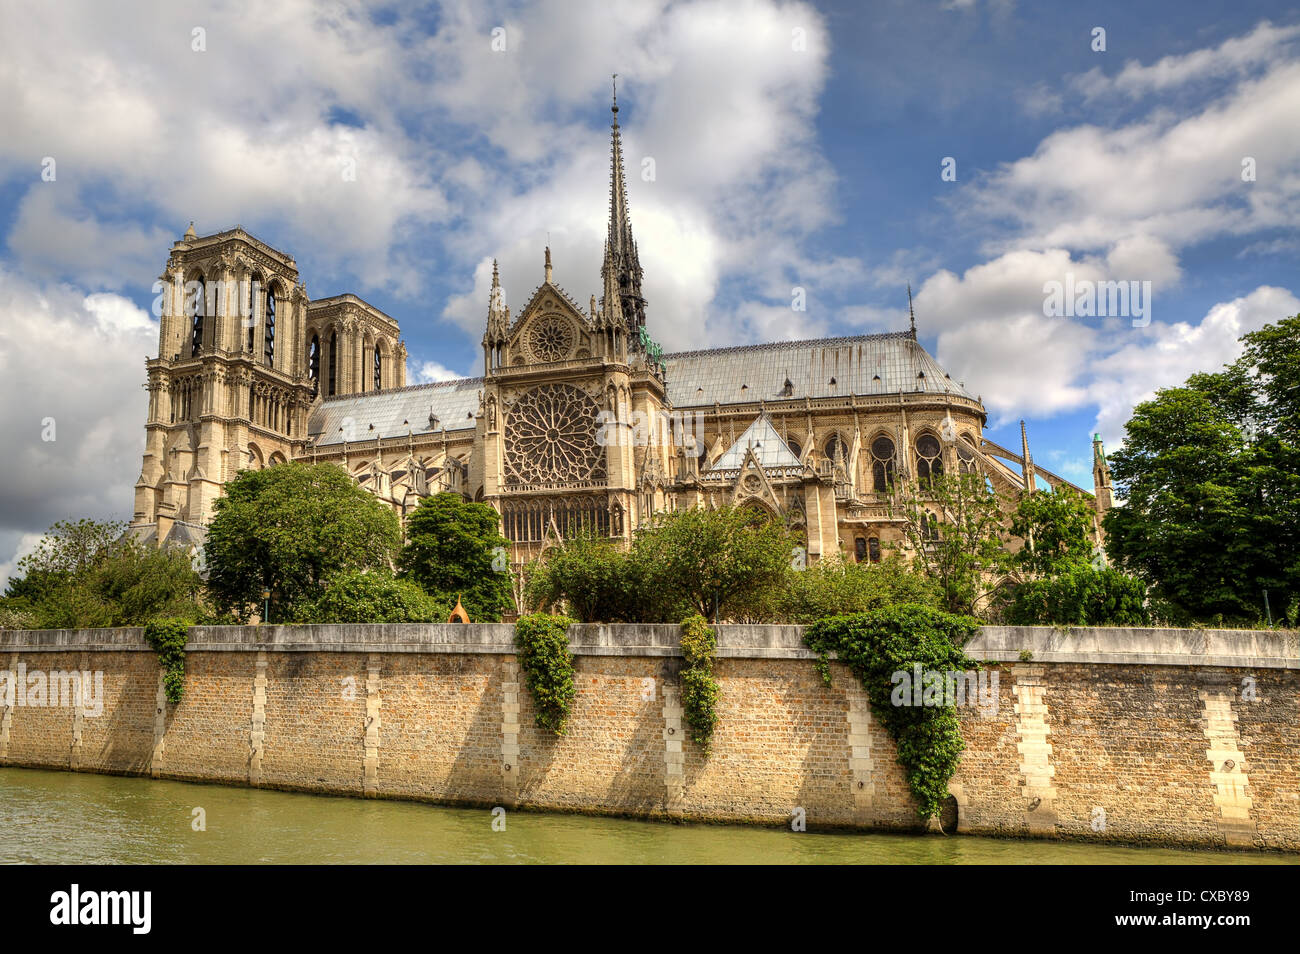 Façade du célèbre Cathédrale Notre Dame de Paris, France.l Banque D'Images